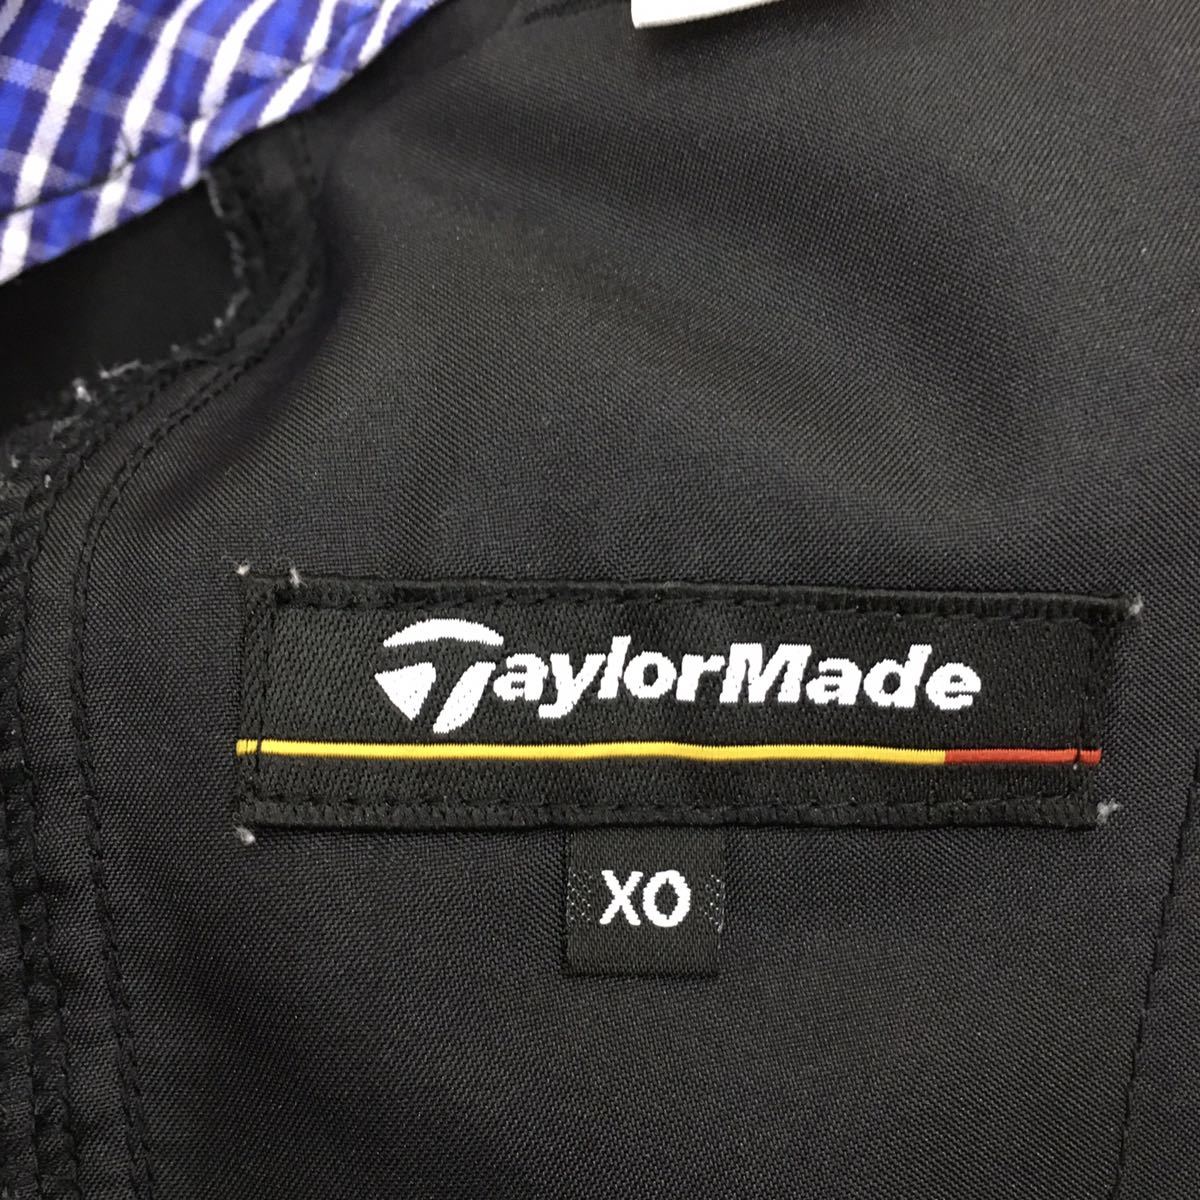 テーラーメイド ゴルフウェア スポーツウェア ハーフパンツ ショートパンツ 刺繍ロゴ ワンポイント メンズ 大きい サイズXO